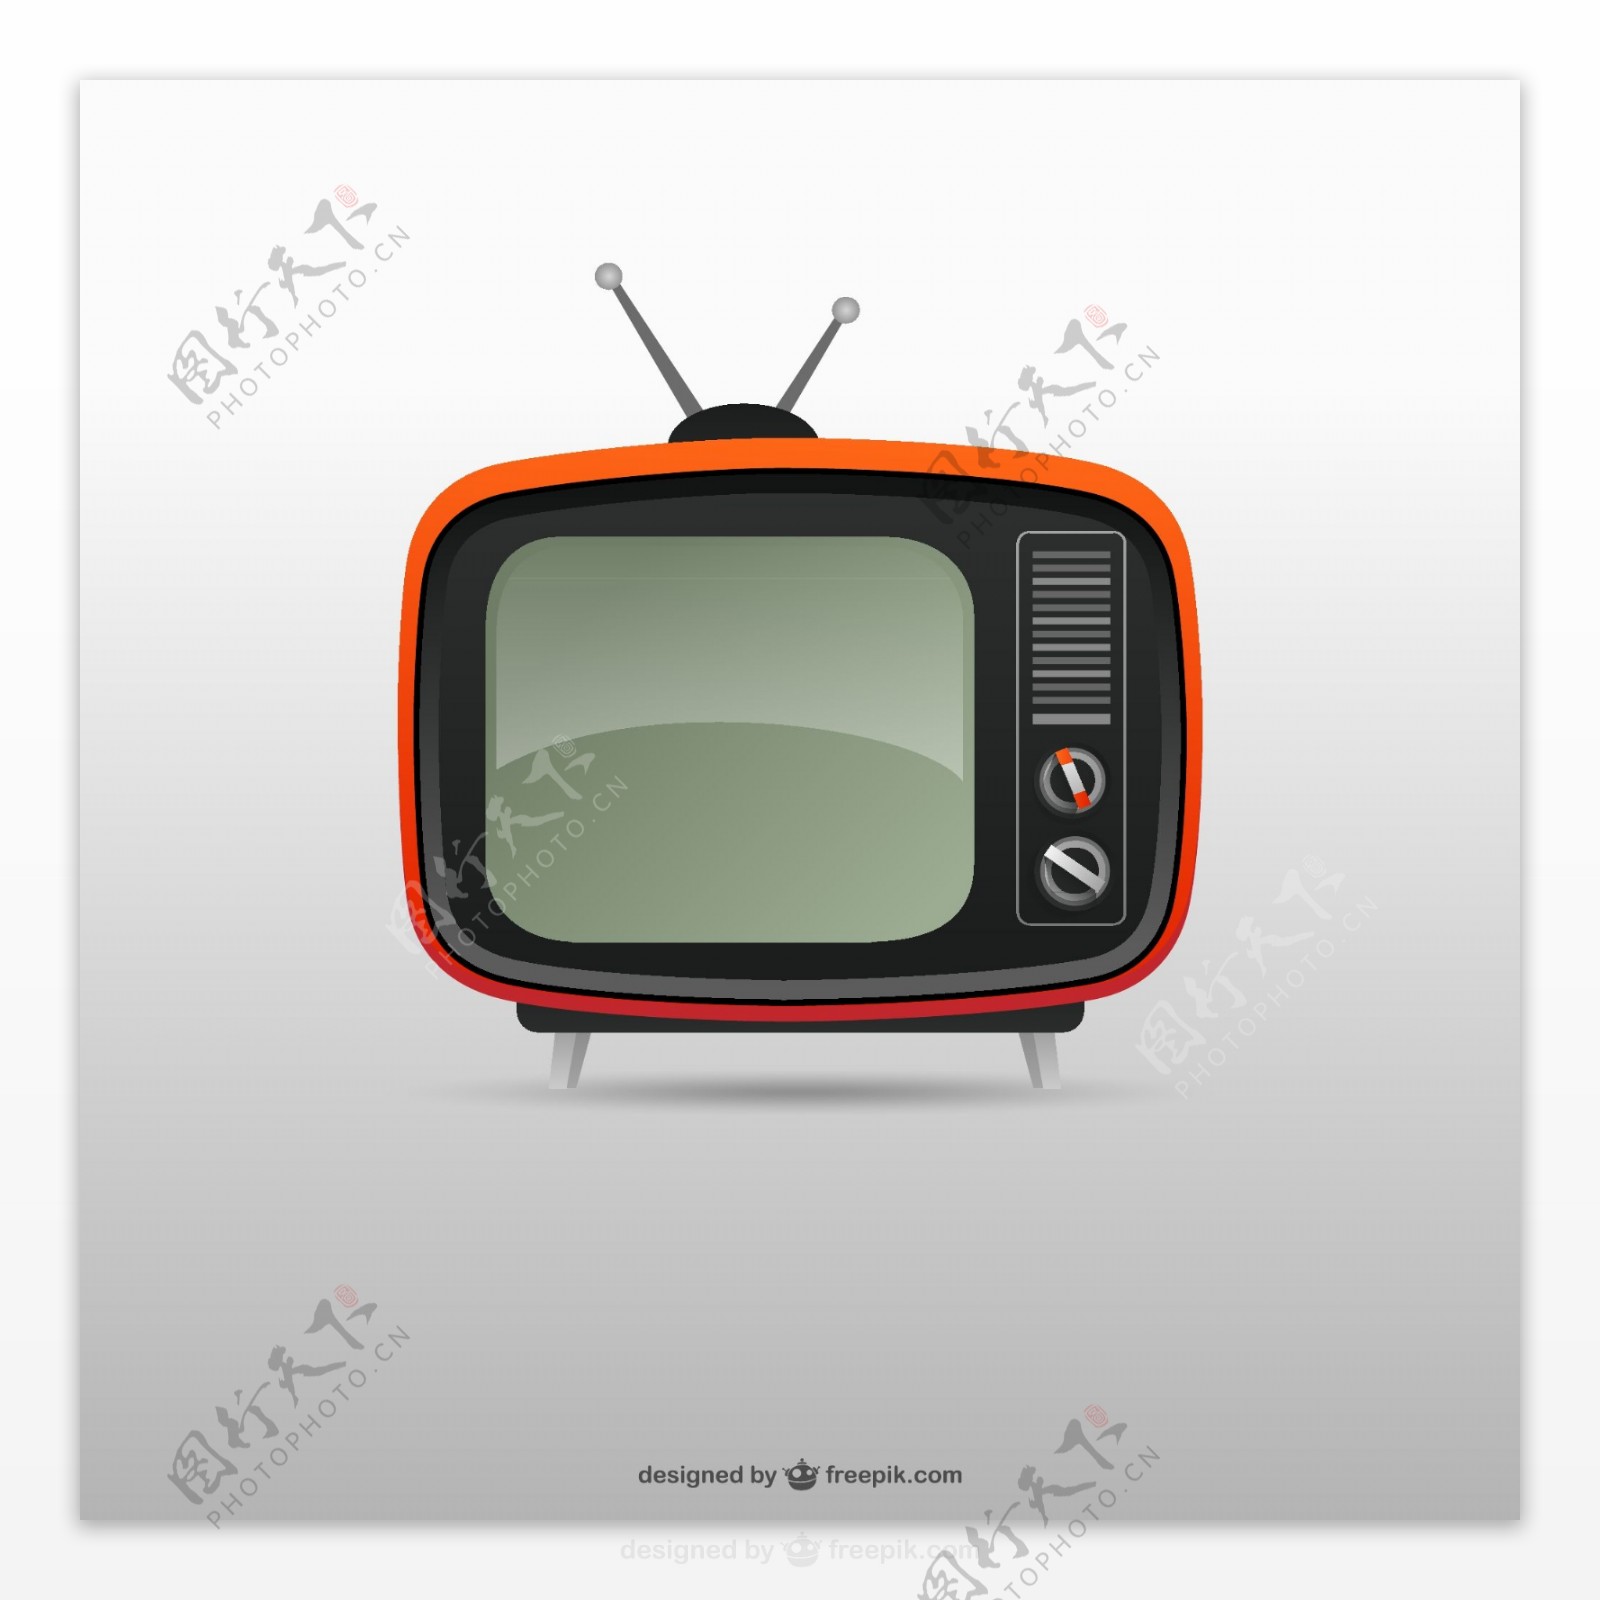 卡通红色老式电视机矢量素材